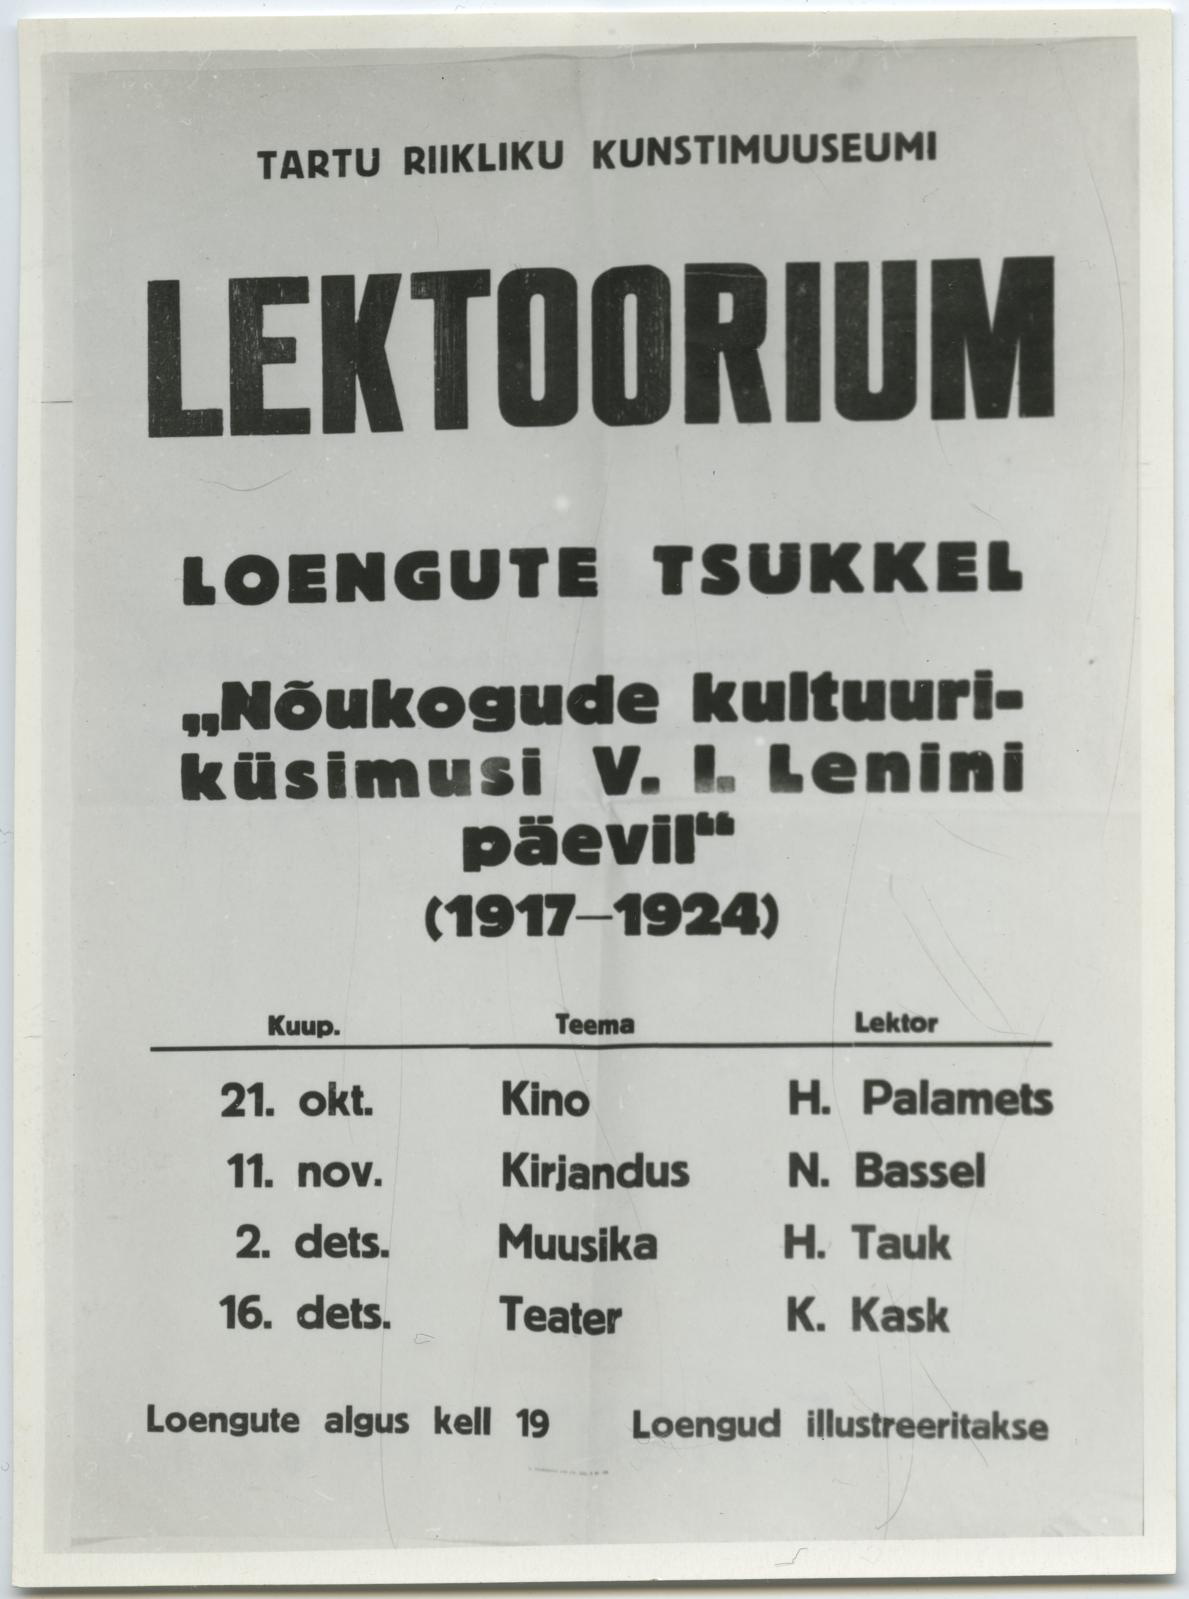 Lektooriumi afišš 1969